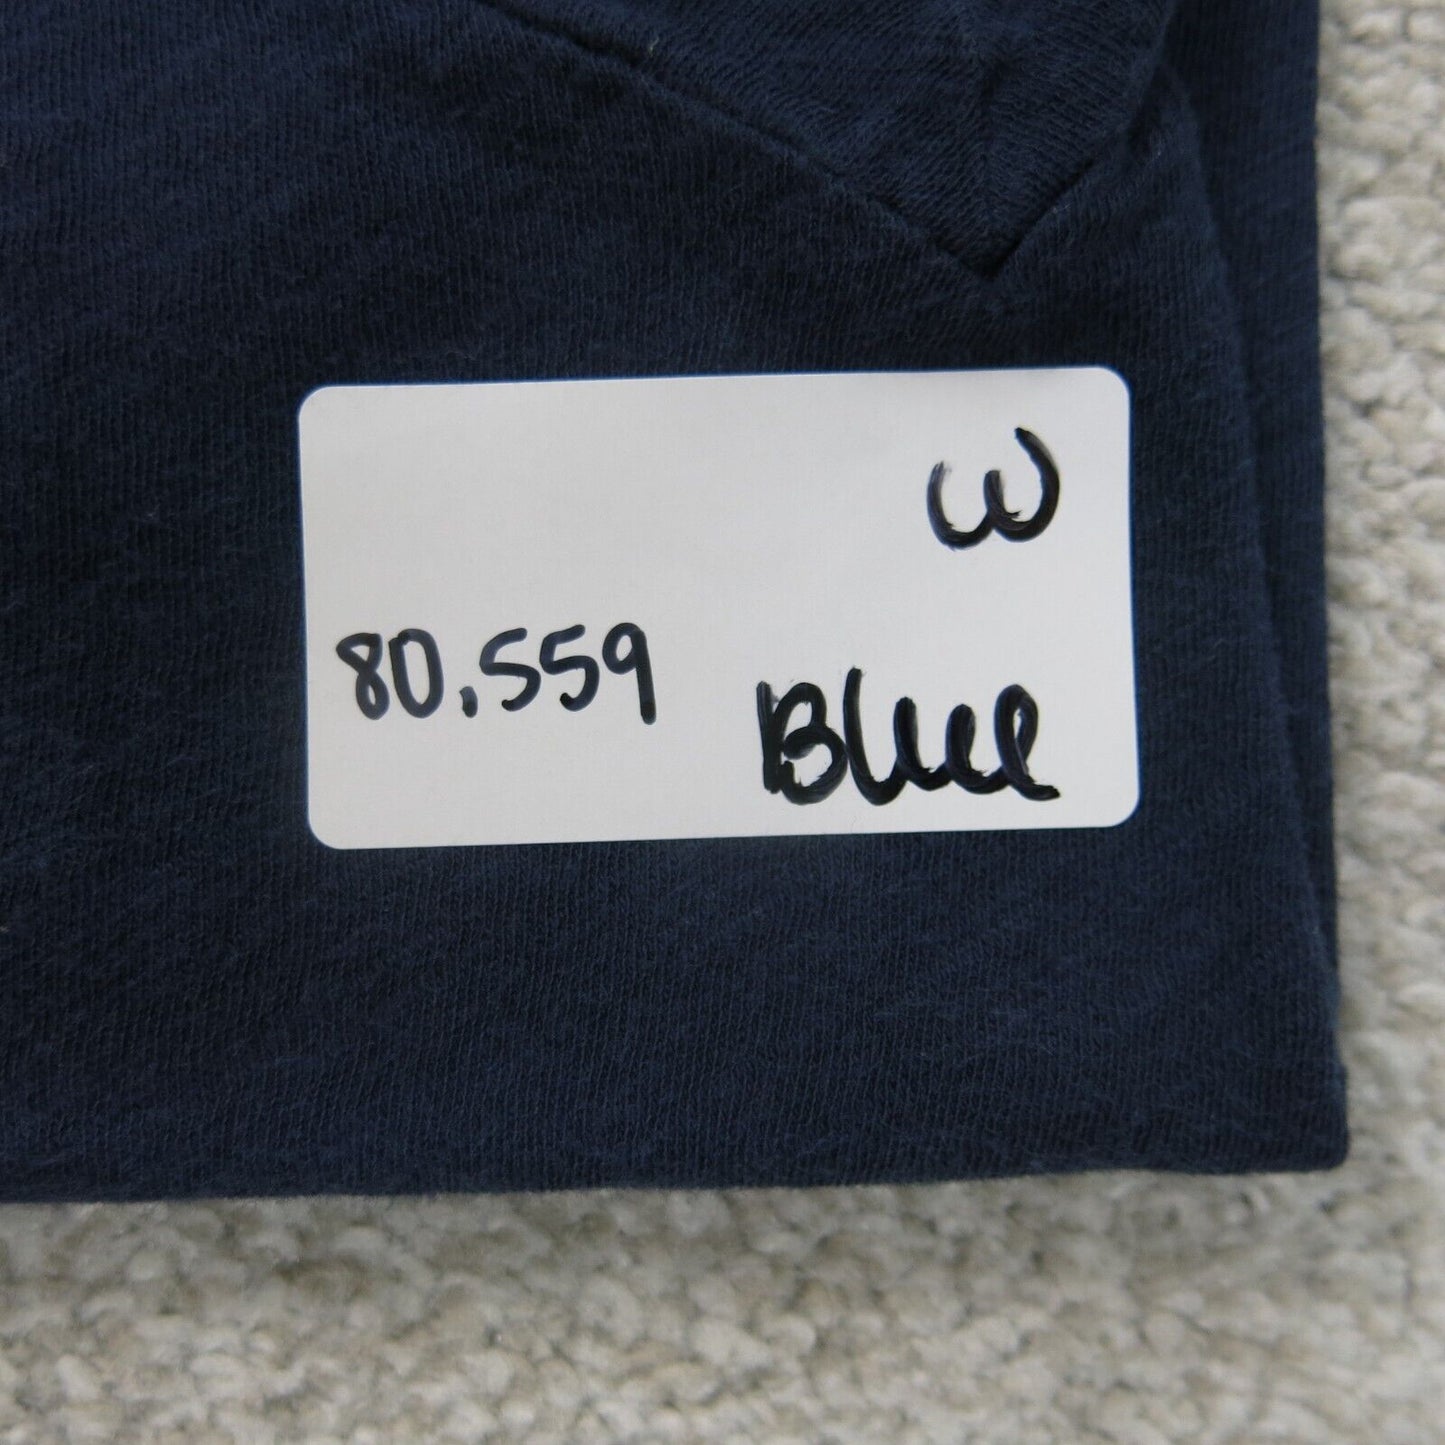 J Crew Shirt Womens Large Blue Short Sleeve Lightweight Outdoors Top V Neck